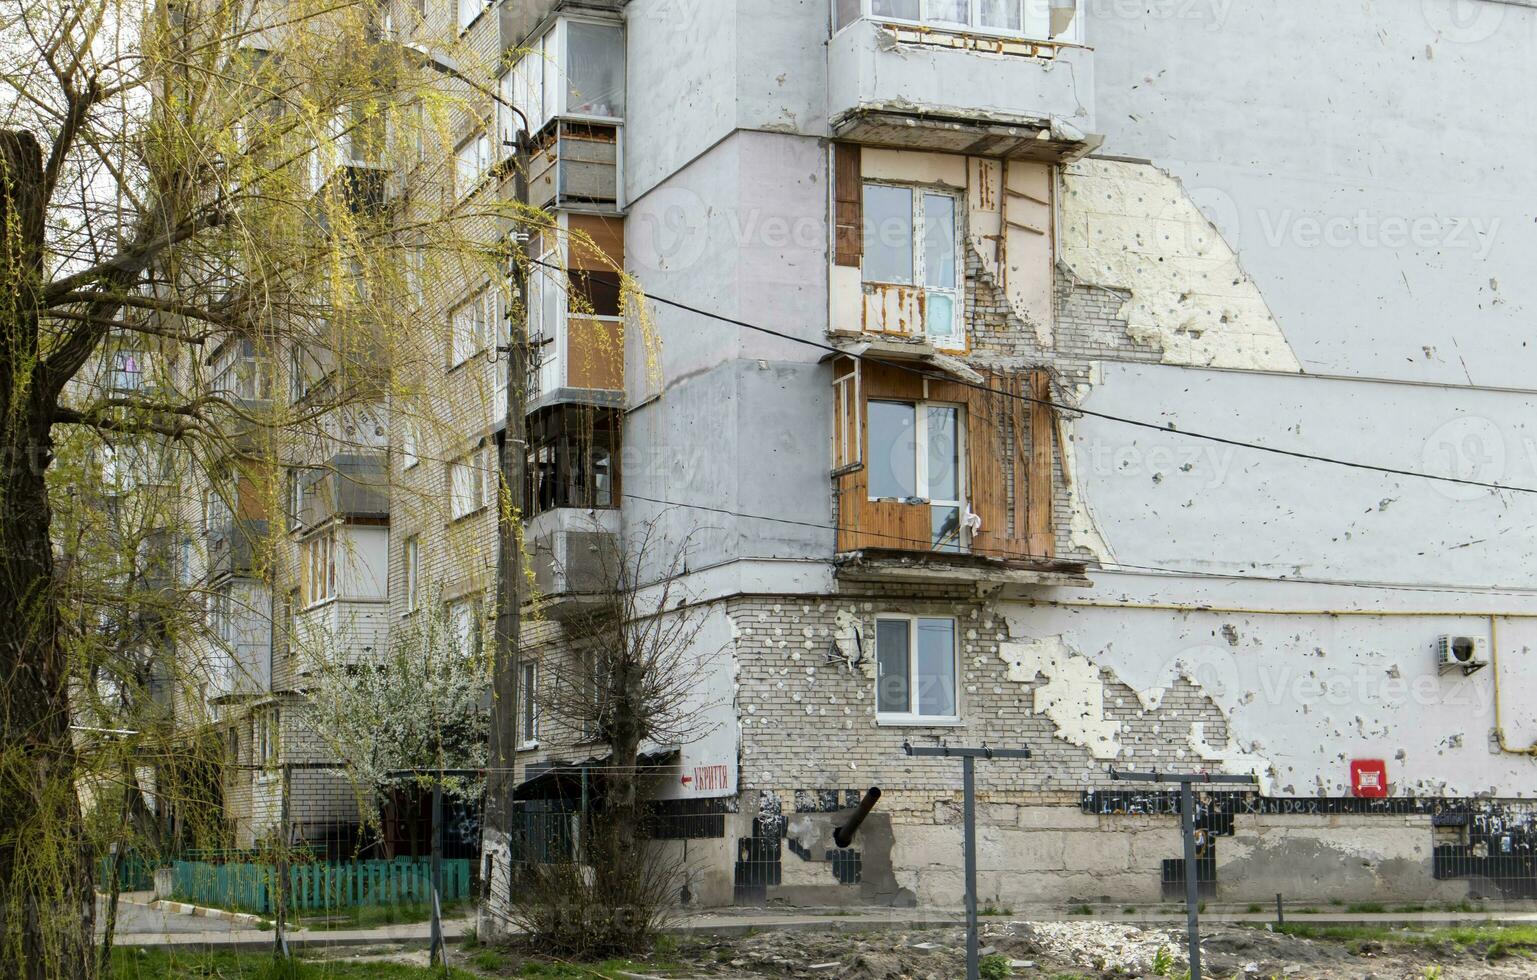 brûlé appartements dans une à plusieurs étages Résidentiel bâtiment, le conséquences de le guerre dans Ukraine. Traduction - abri. bombardé Résidentiel bâtiment. Ukraine, kyiv - avril 29, 2023. photo